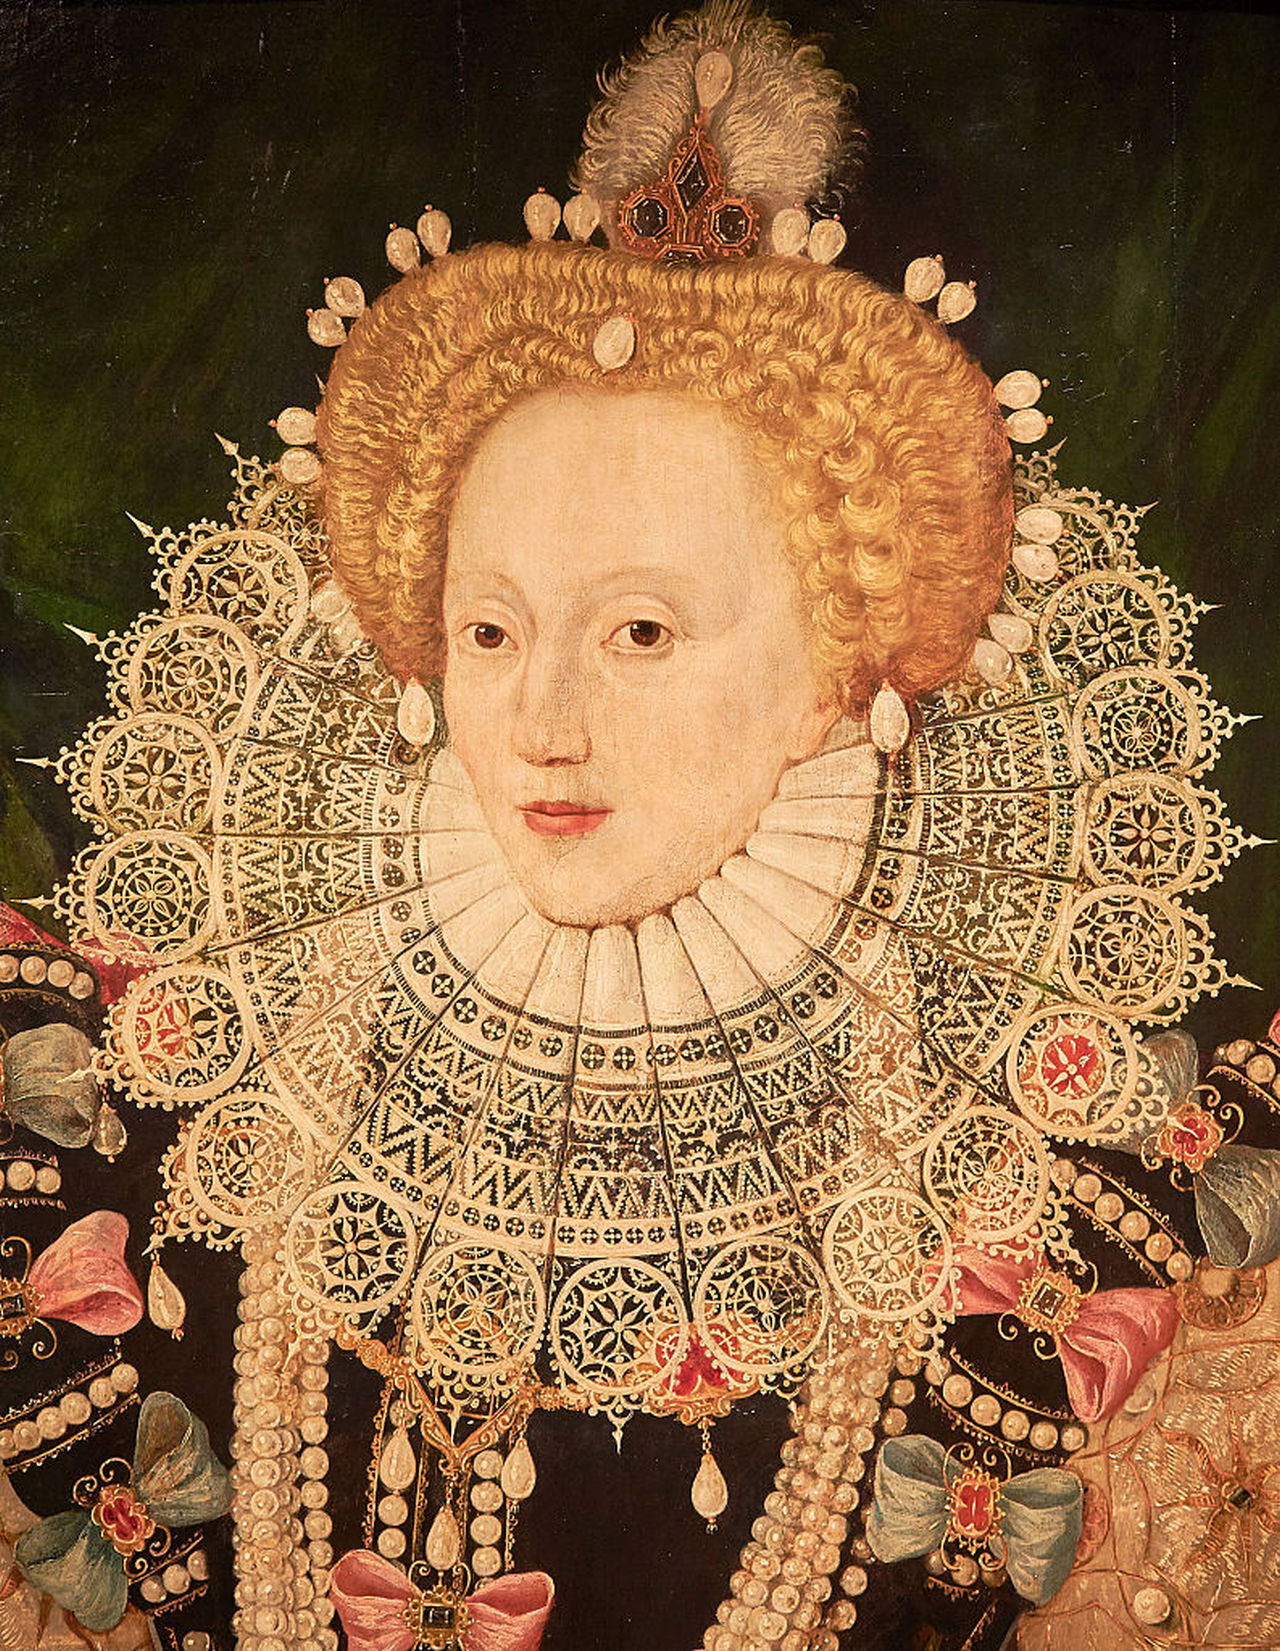 <p><strong>Английската кралица Елизабет I</strong></p>

<p>Един от последните монарси от дома на Тюдорите. Липсата на вежди и странно високата линия на косата всъщност не направиха много за красотата на тази кралица.</p>